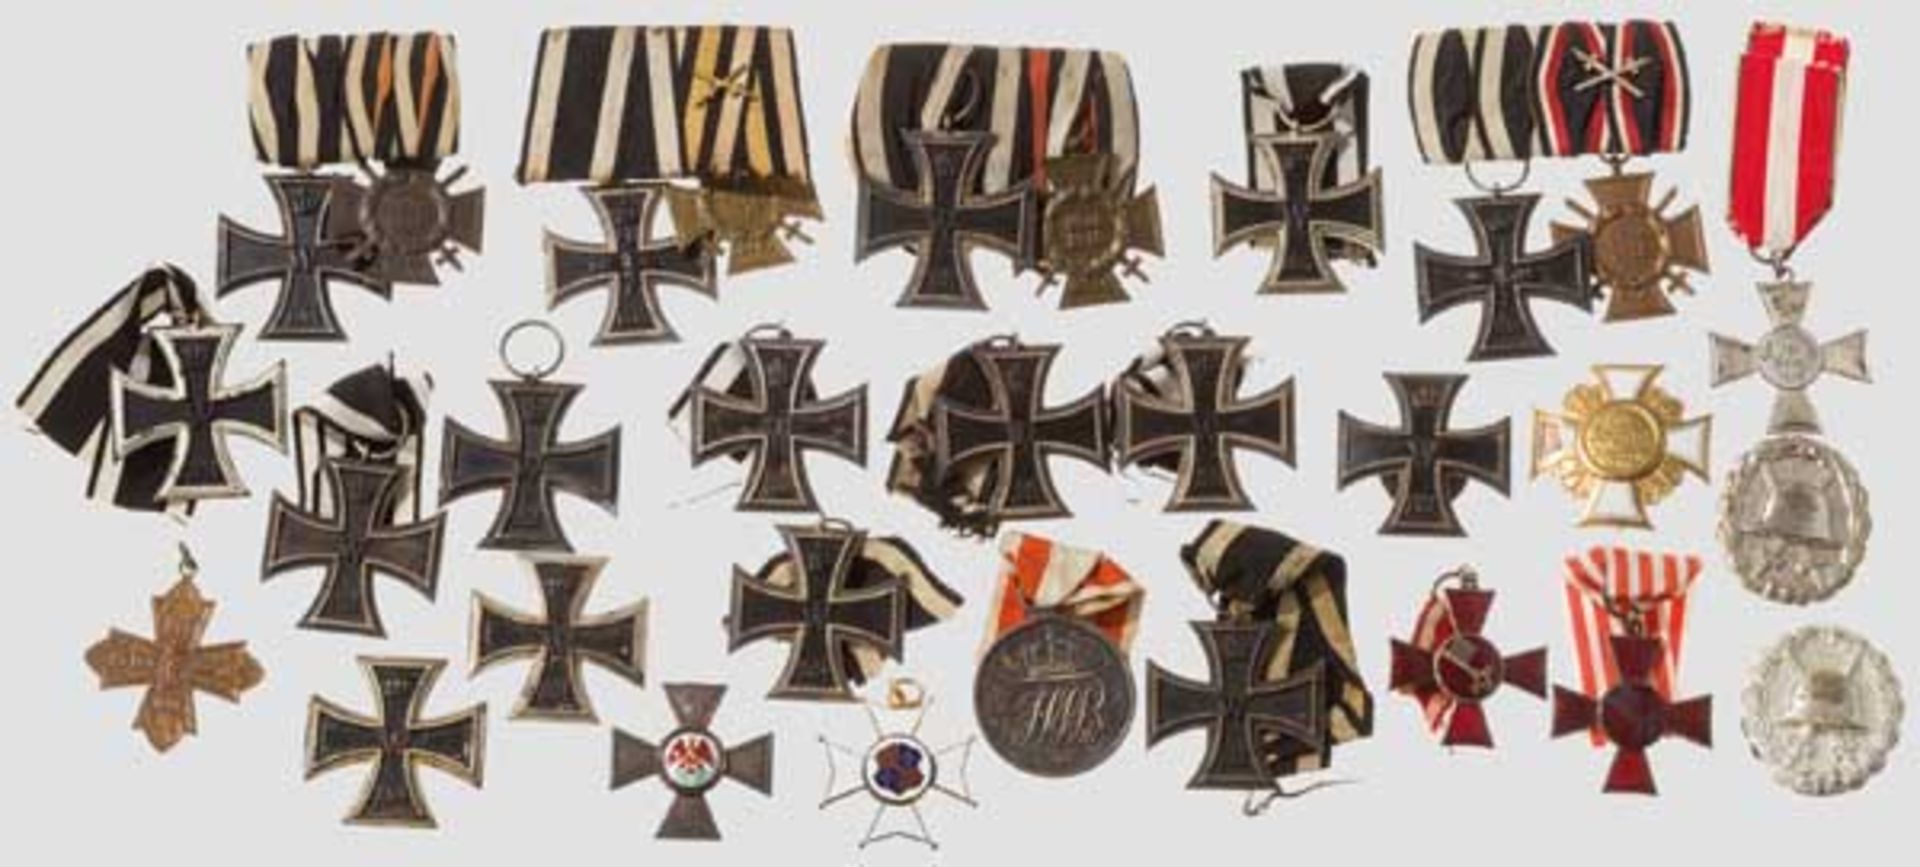 Ordenssammlung Ca. 50 Orden und Ehrenzeichen, darunter drei EK 1 (bei einem fehlt die